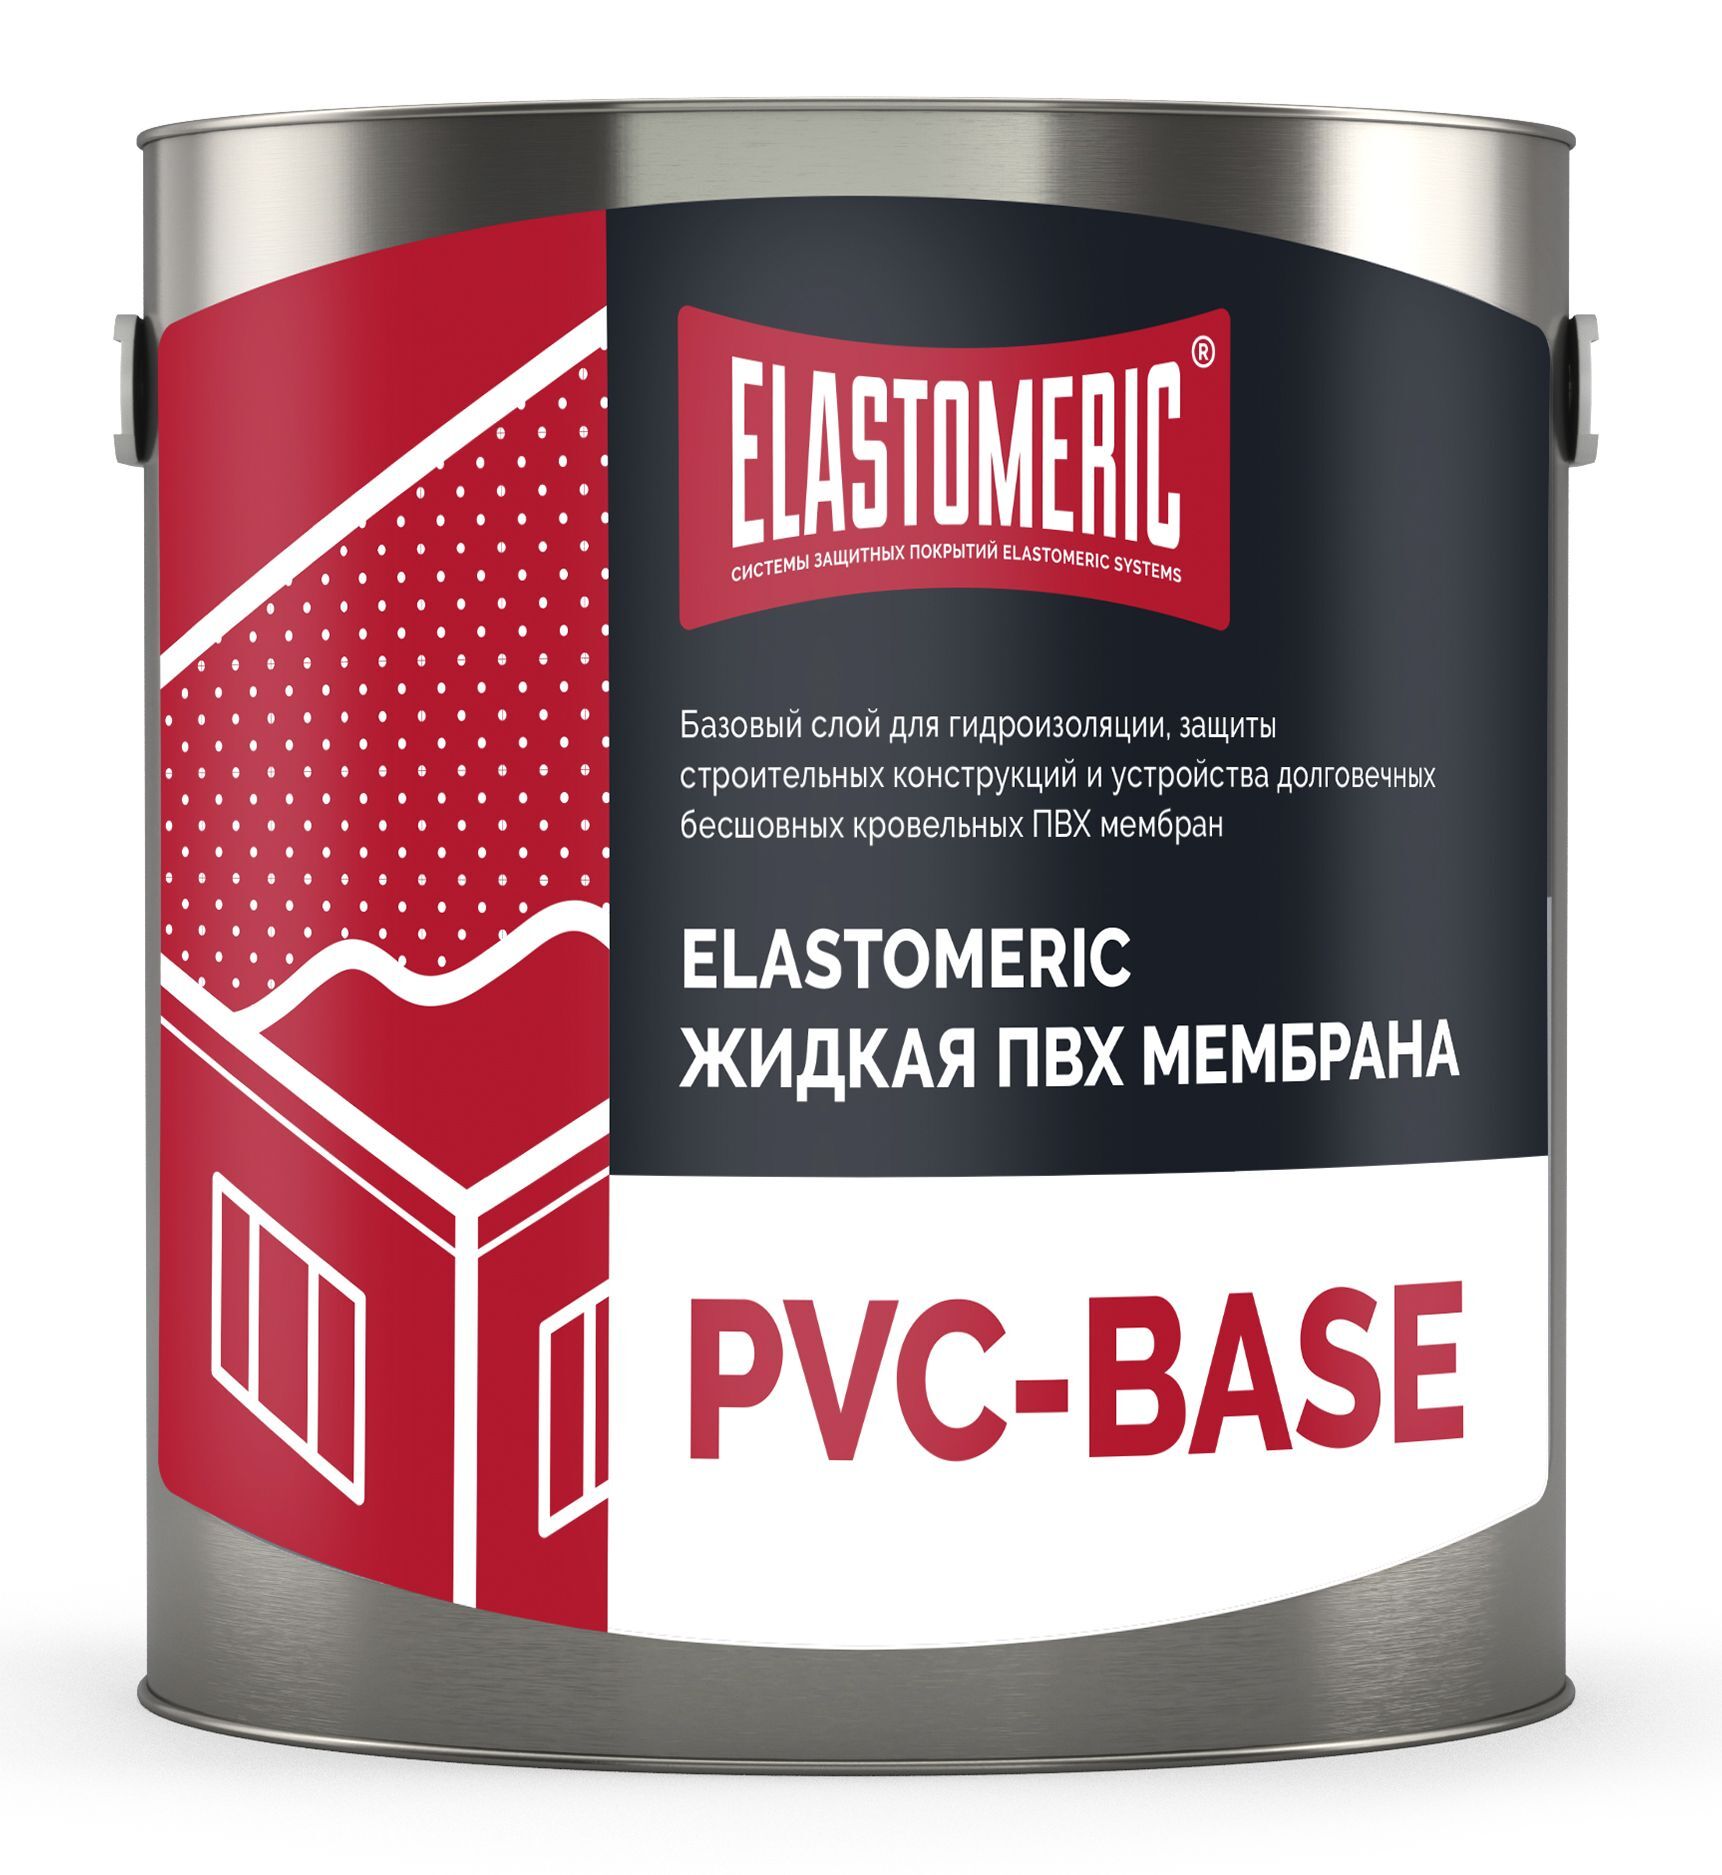 Жидкая ПВХ мембрана - ELASTOMERIC PVC BASE (базовый слой) 3 кг